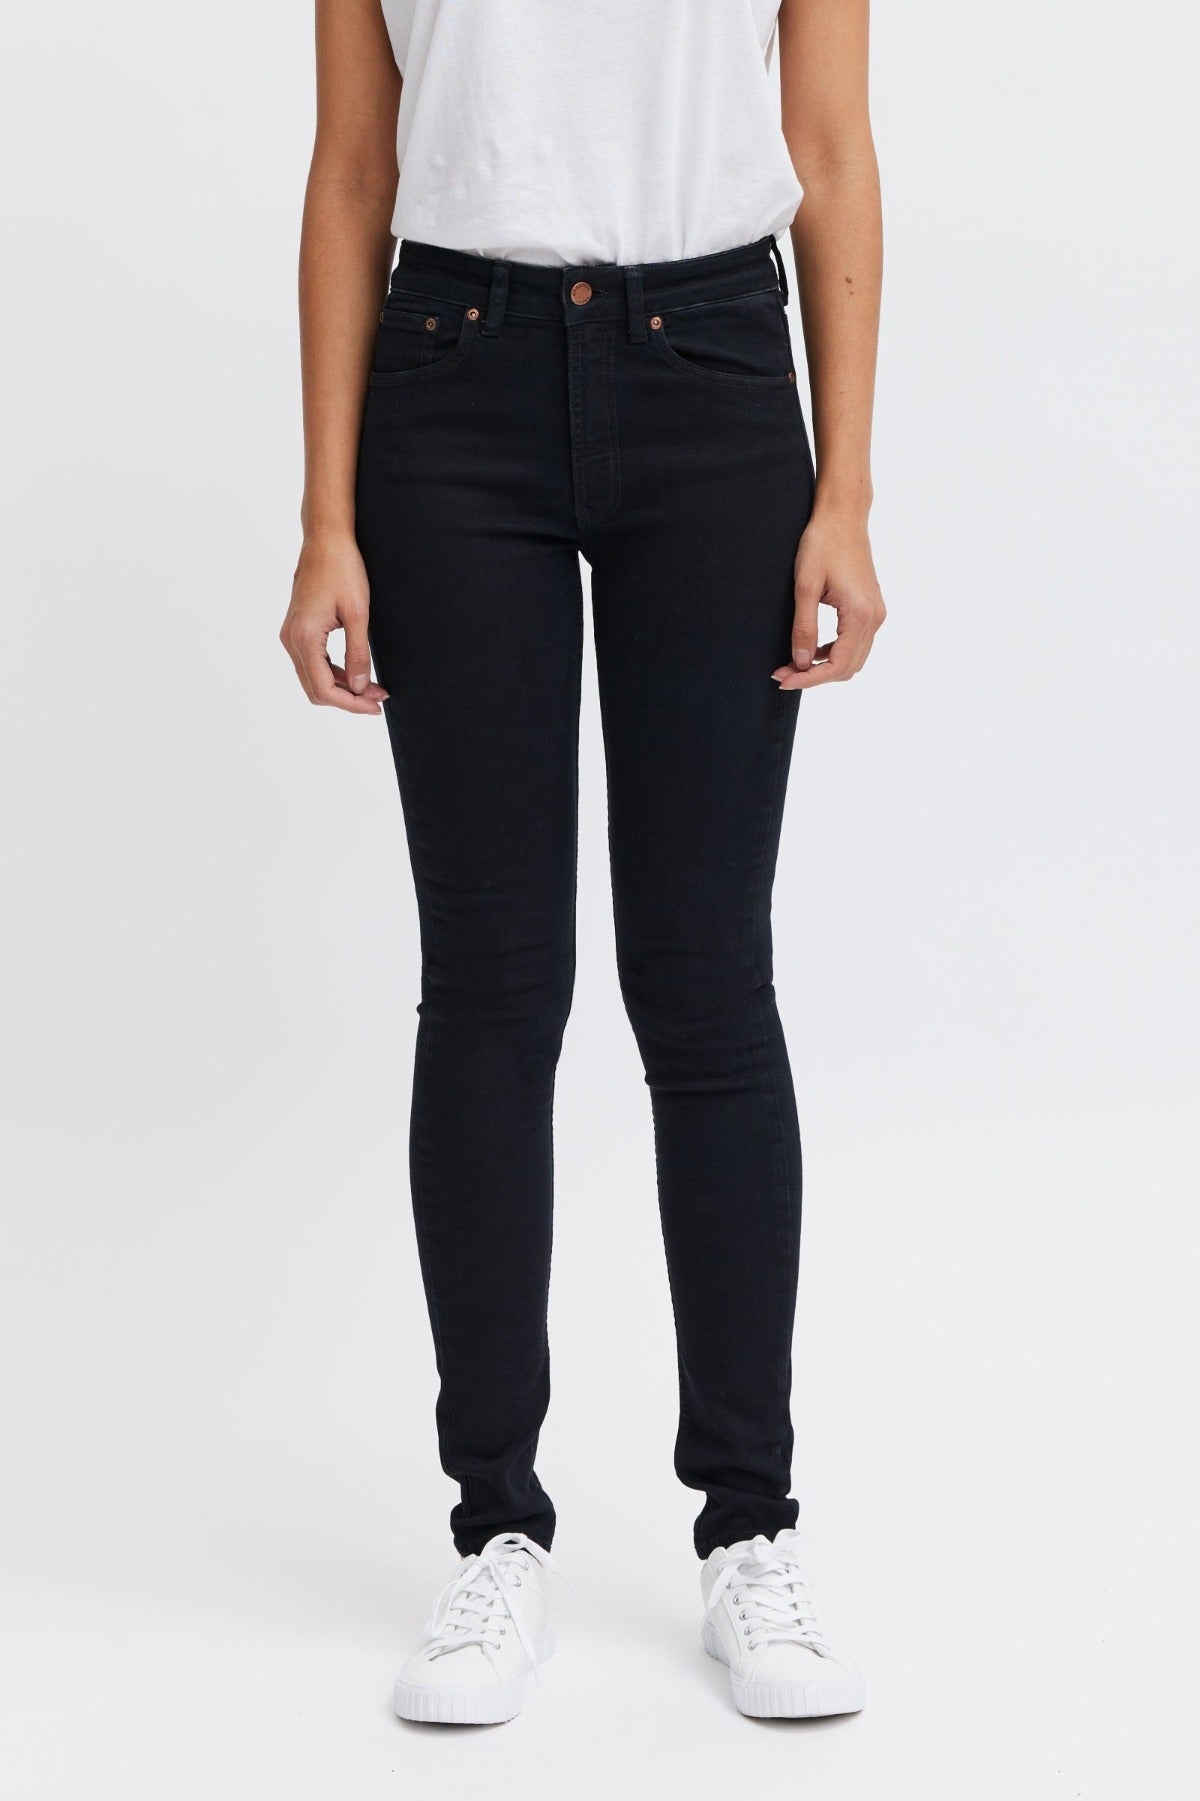 Lease black denim jeans for women